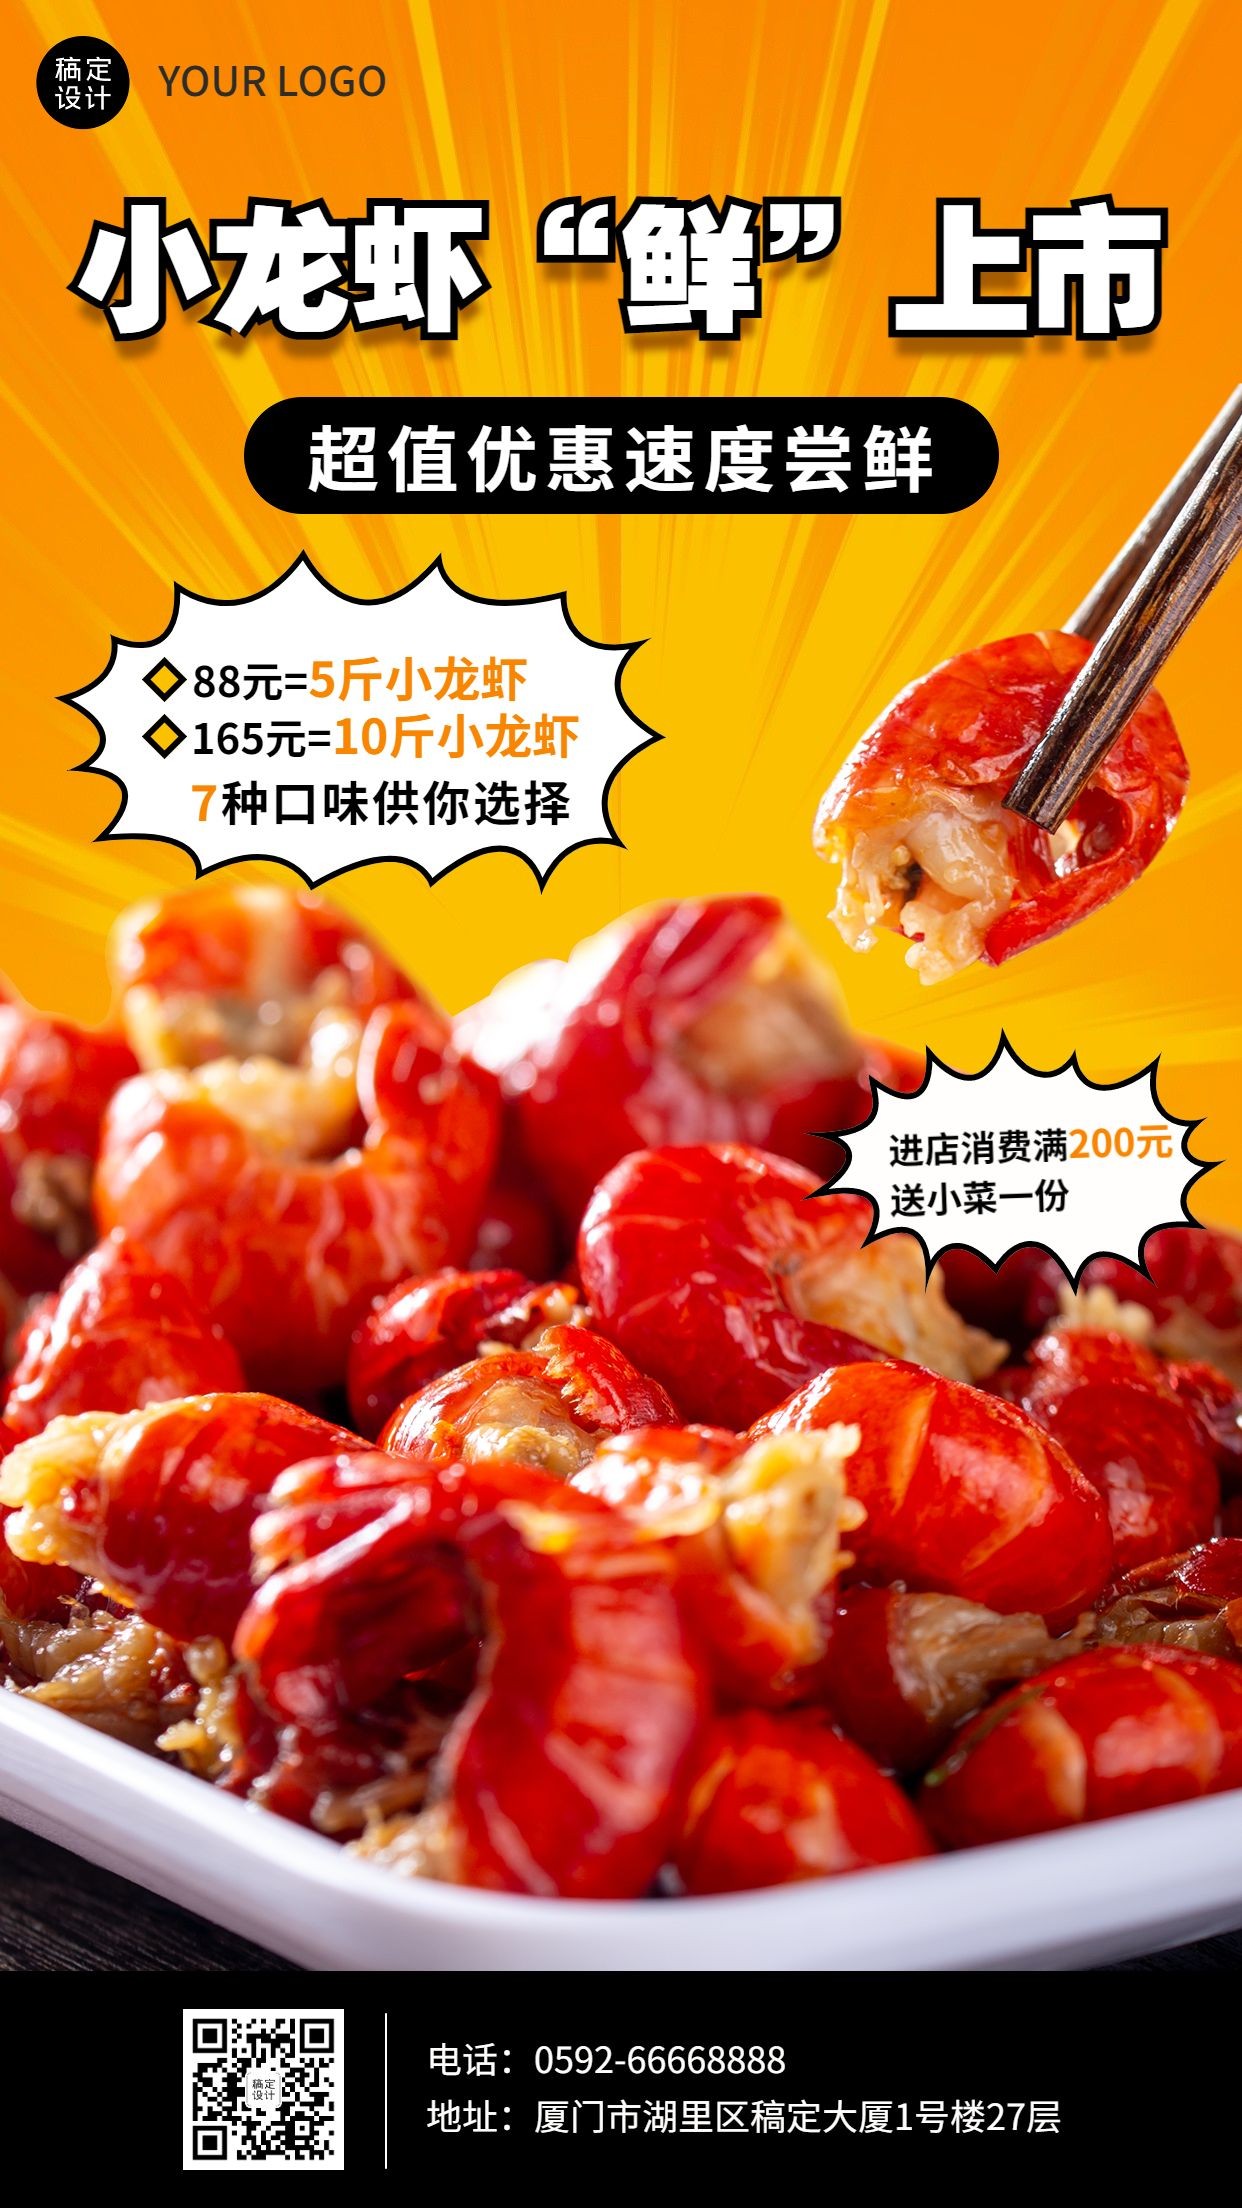 餐饮美食小龙虾新品上市营销手机海报预览效果